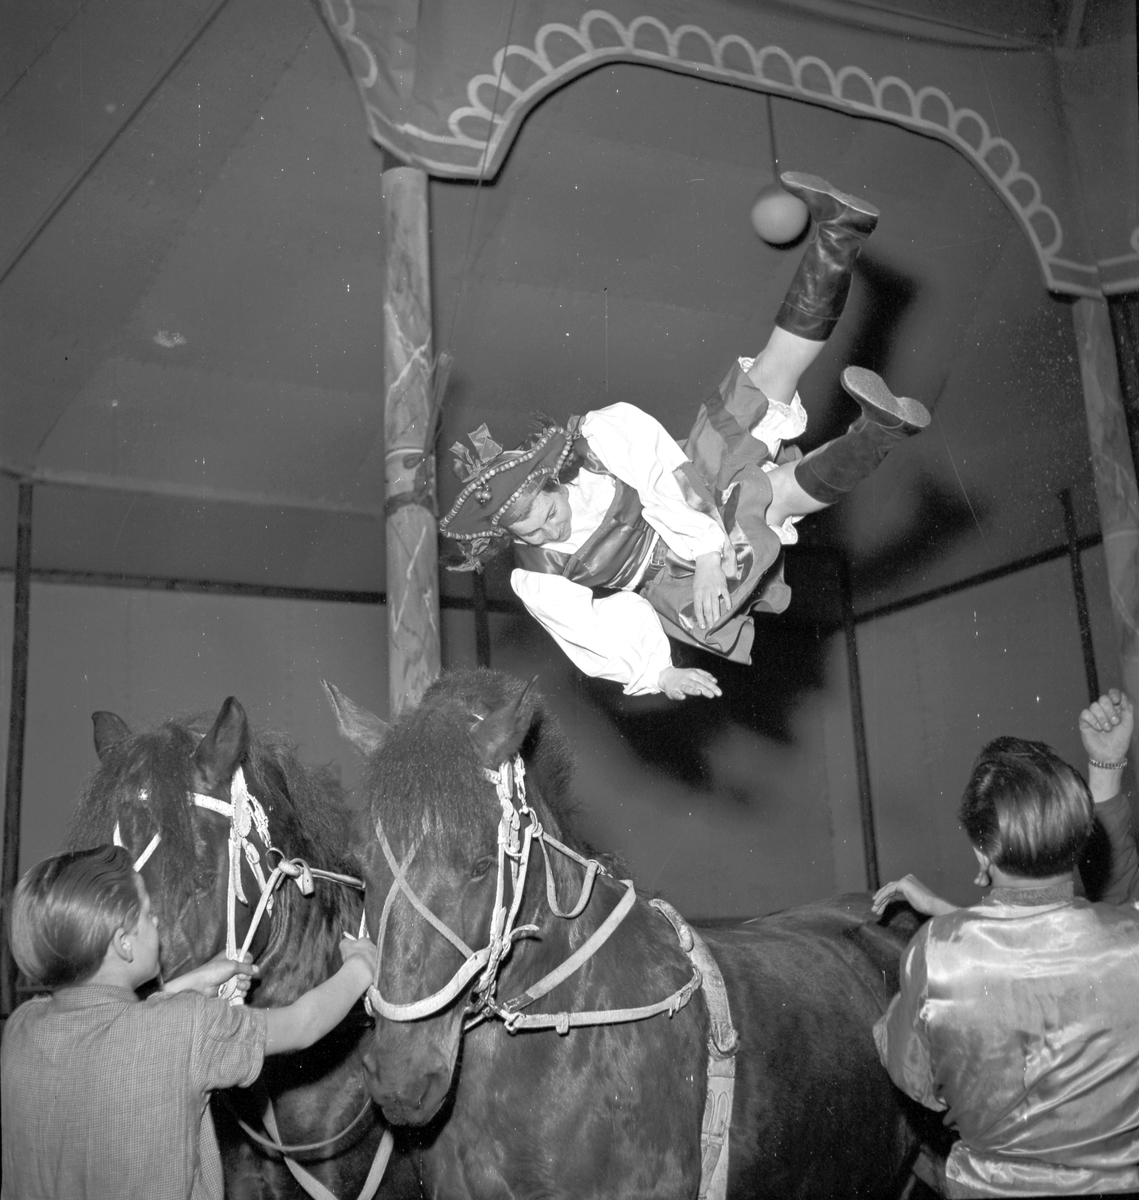 Furuvik
Folkdanslaget Furuviks Ungdomslag och Barnkabarén blev Furuviksbarnen.
Cirkusbyggnaden Teater-cirkus med ca 600 platser, uppförd 1940
Furuviksbarnen tränar inför turnén













